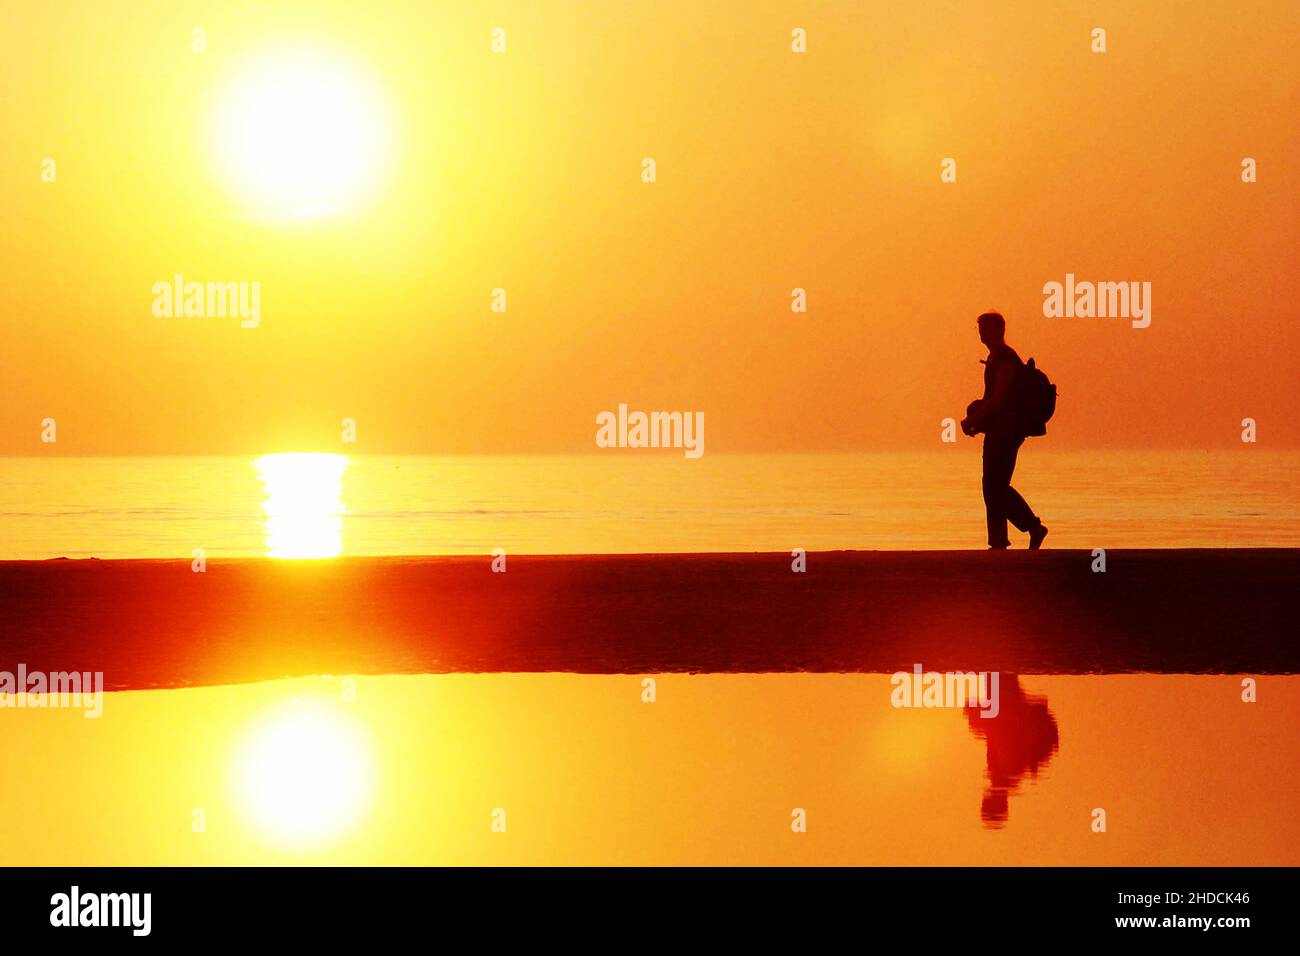 Junger Mann, Silhouette, Wanderung am Meer, Sonnenuntergang, Urlaub, Freizeit, Frei, Friedlich, Sonne, MR:Yes, Stock Photo